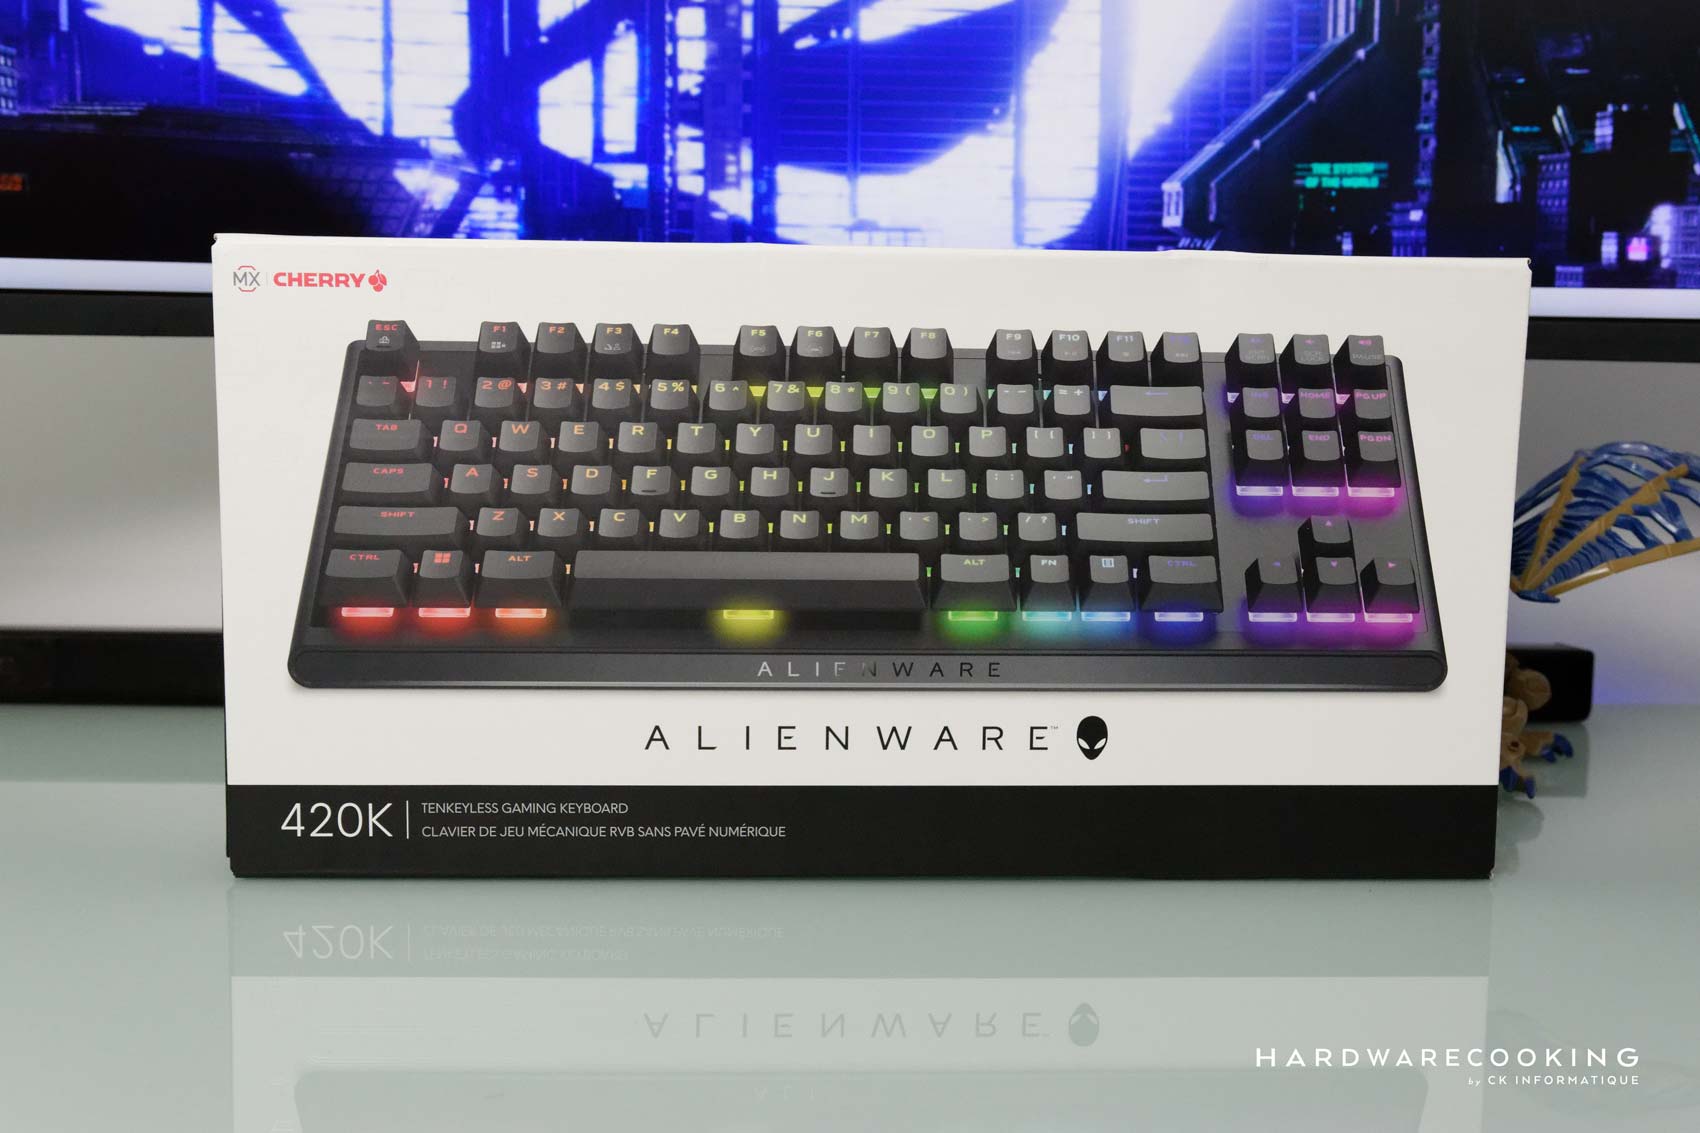 Test : Alienware AW420K, élégance et fiabilité pour ce clavier gamer